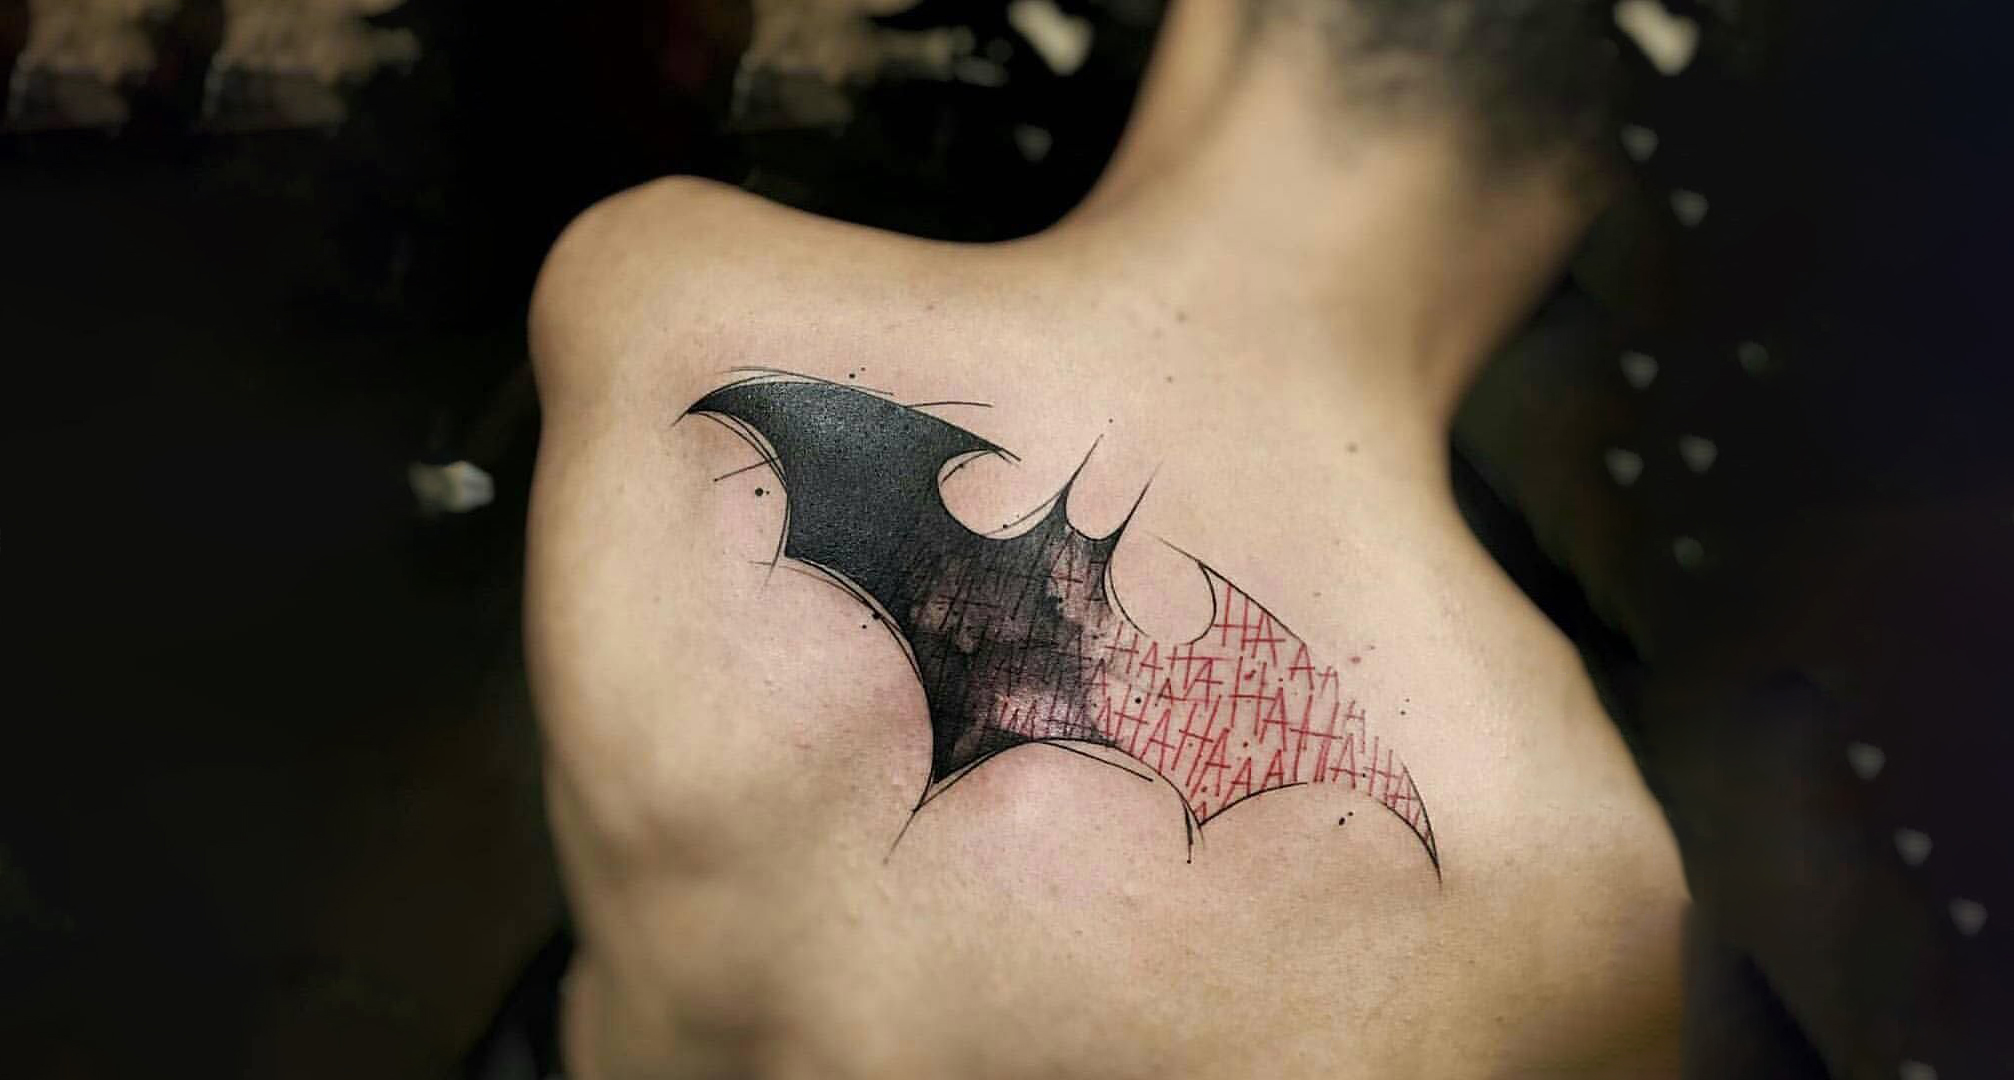 Batman tattoo by Zomb1eChild on DeviantArt